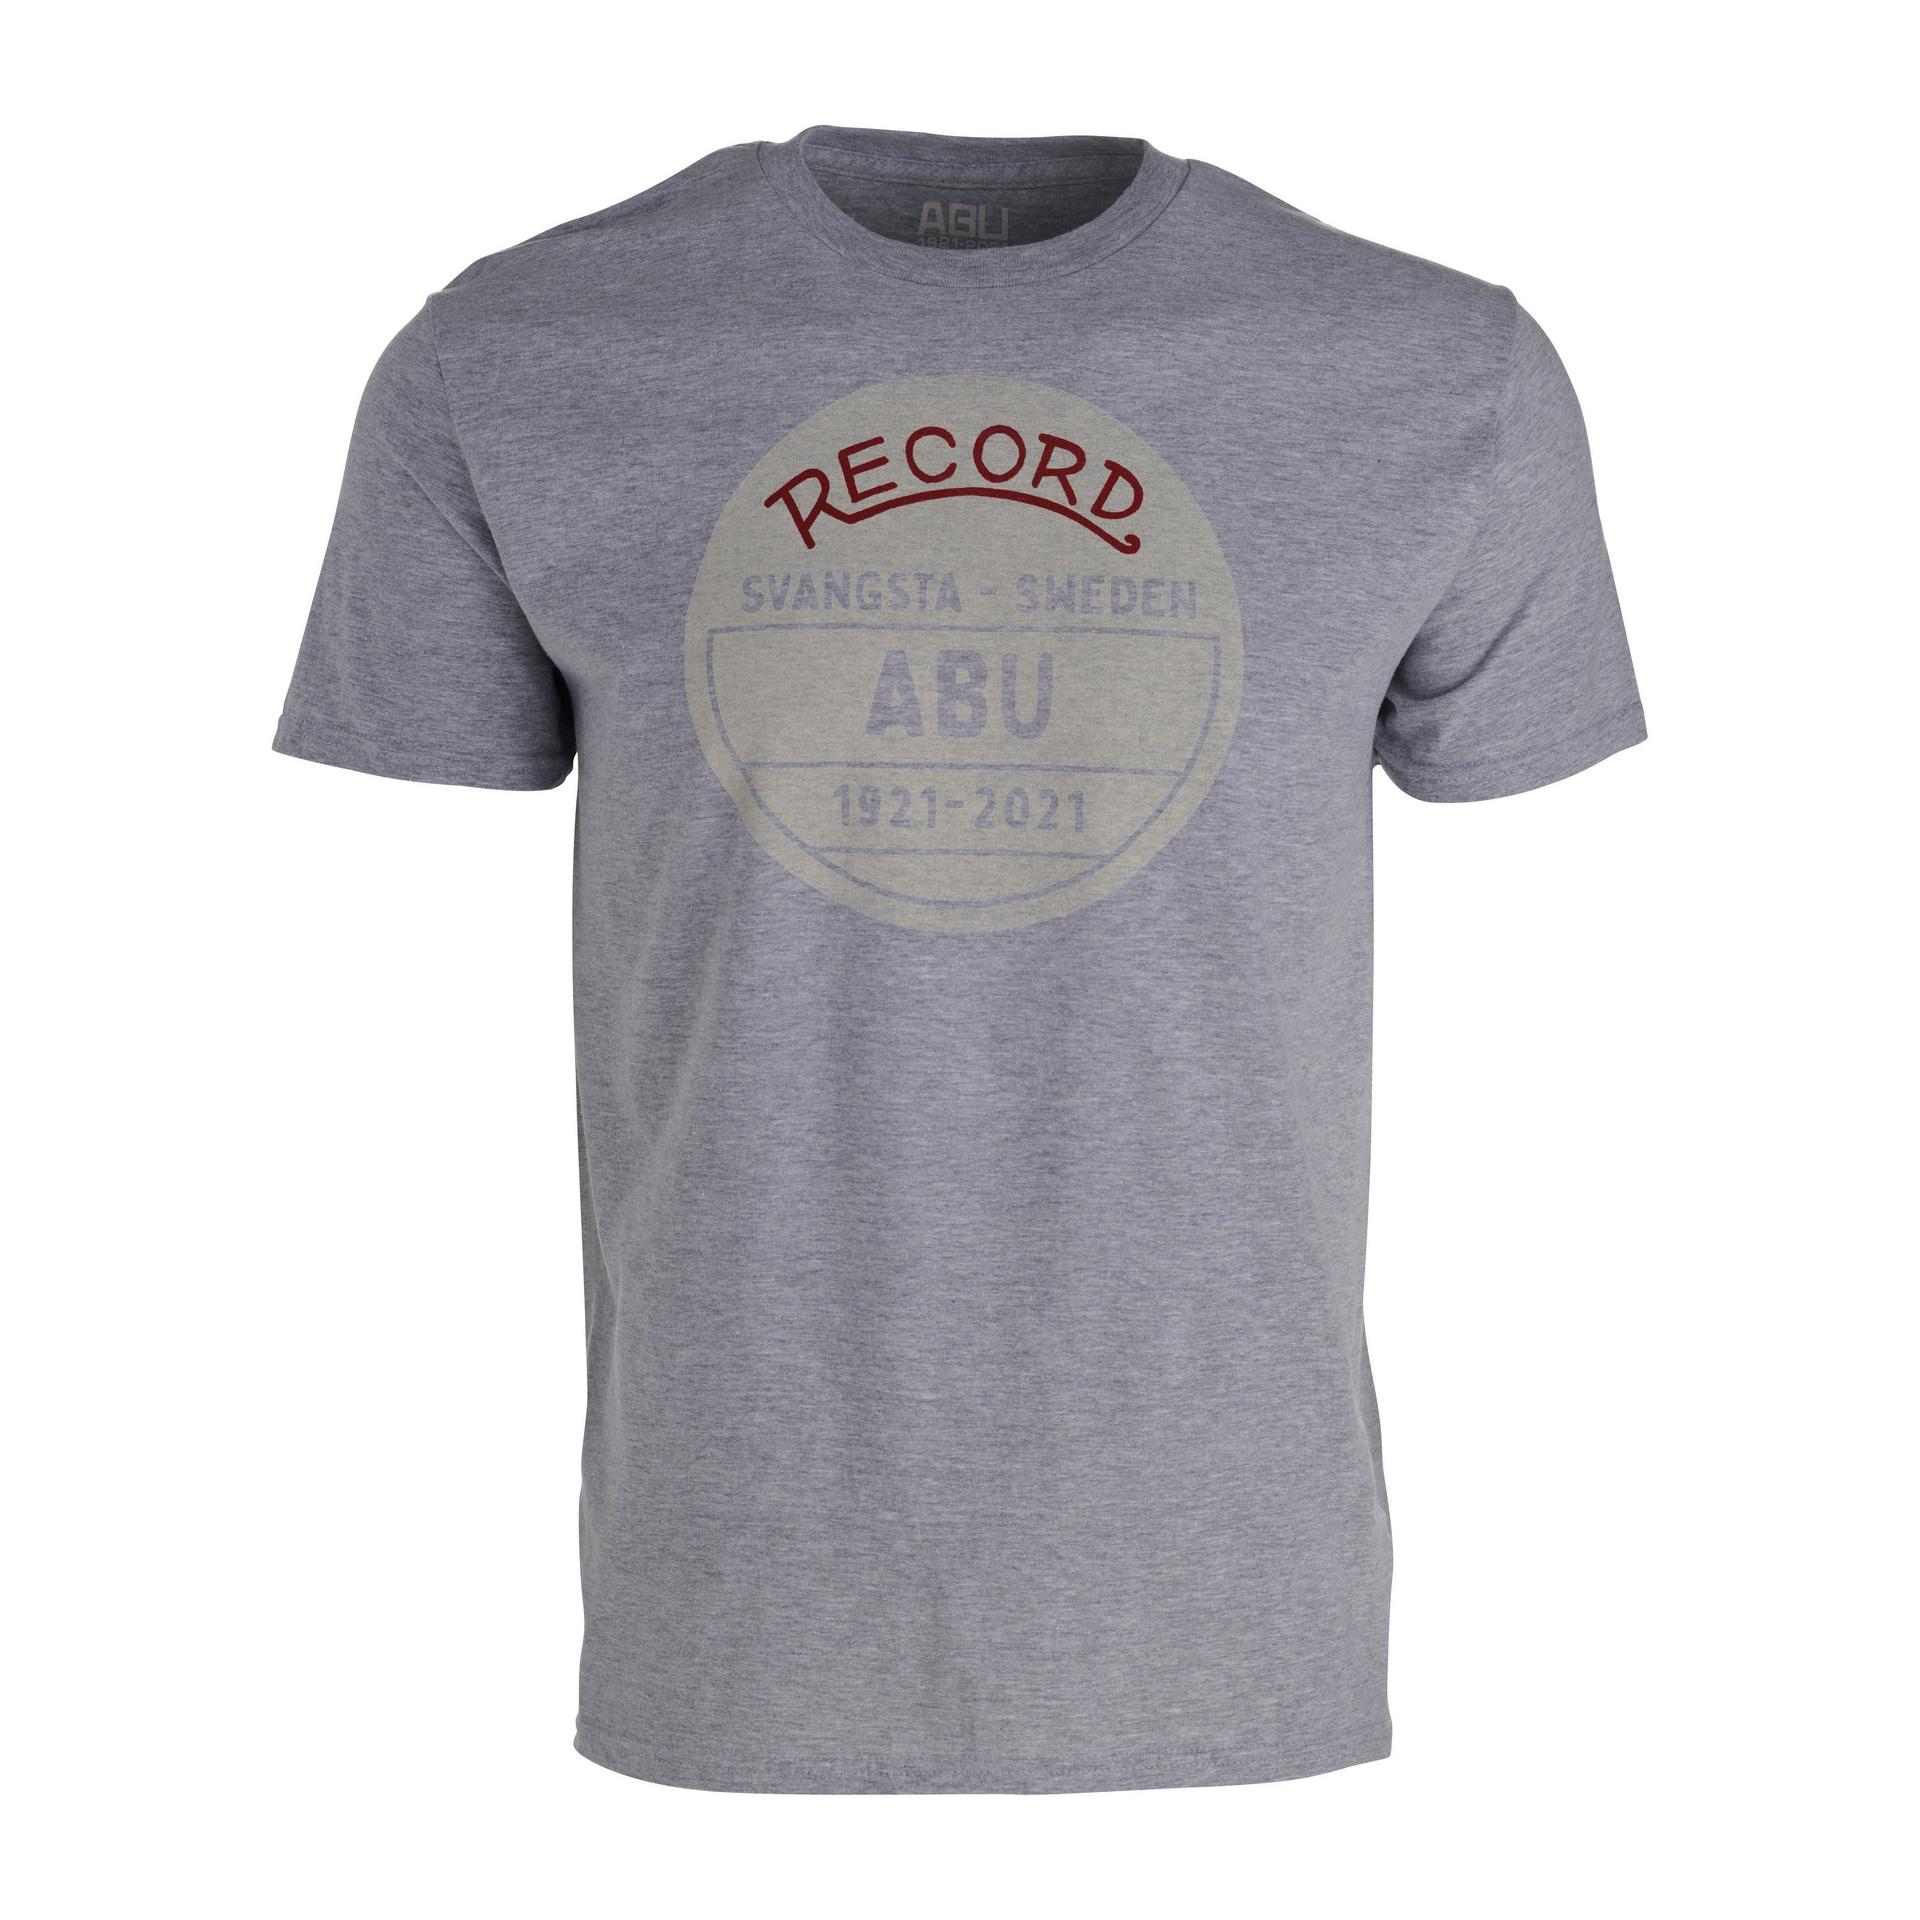 Abu Garcia Abu 100 Years T-Shirt - Record - Heather Nickel, L